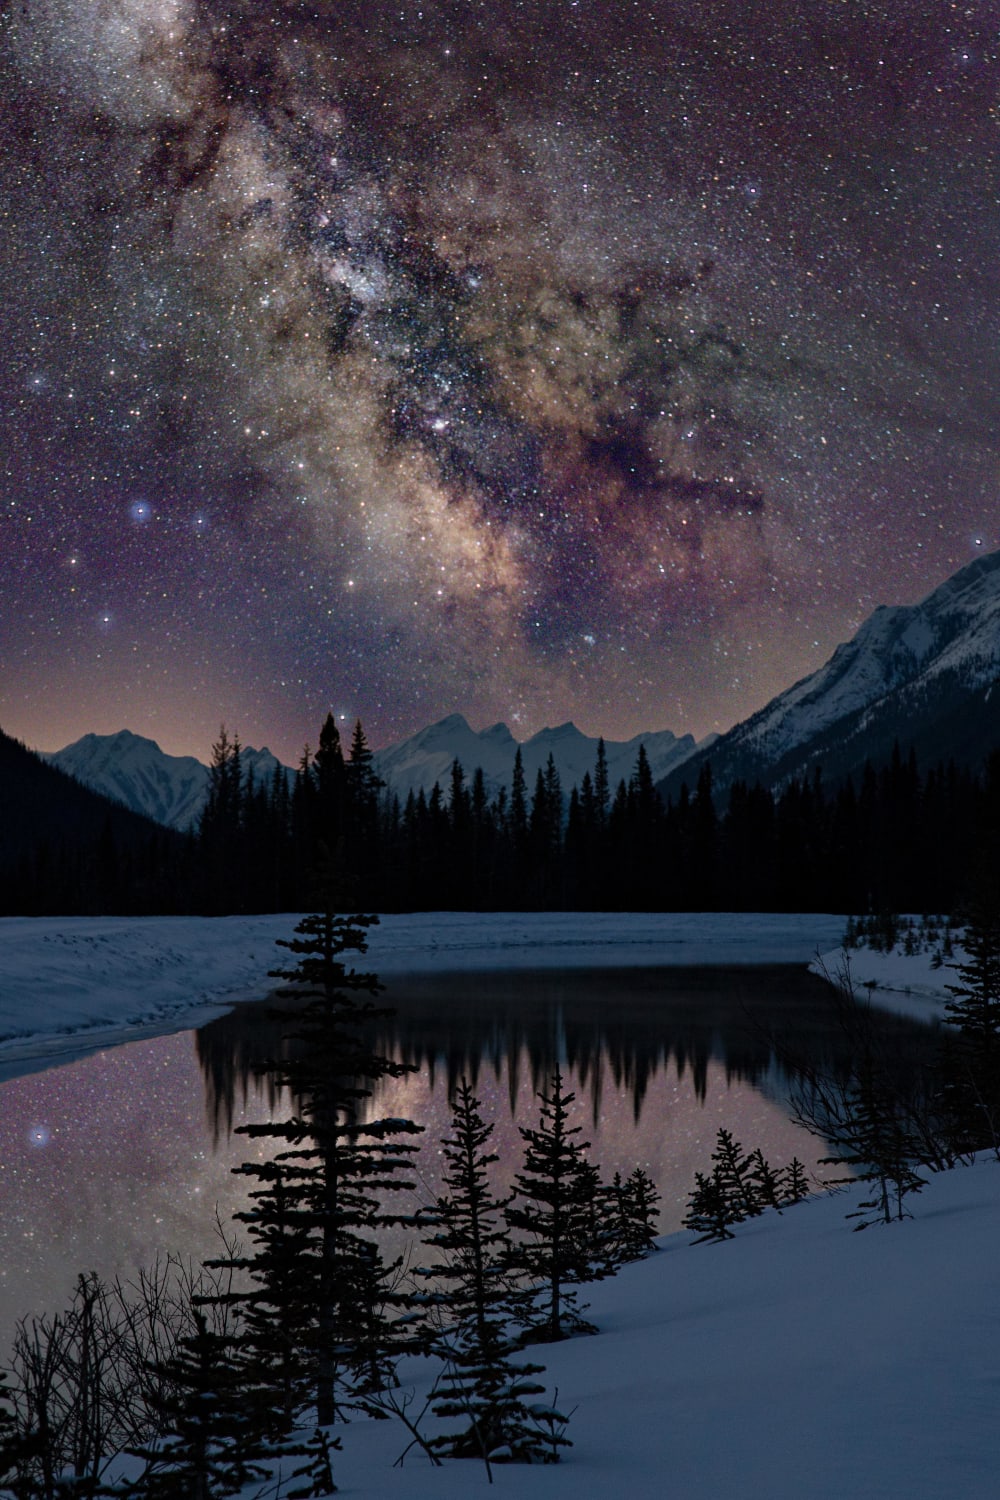 Milky Way over the Mountains - Kananaskis, Alberta